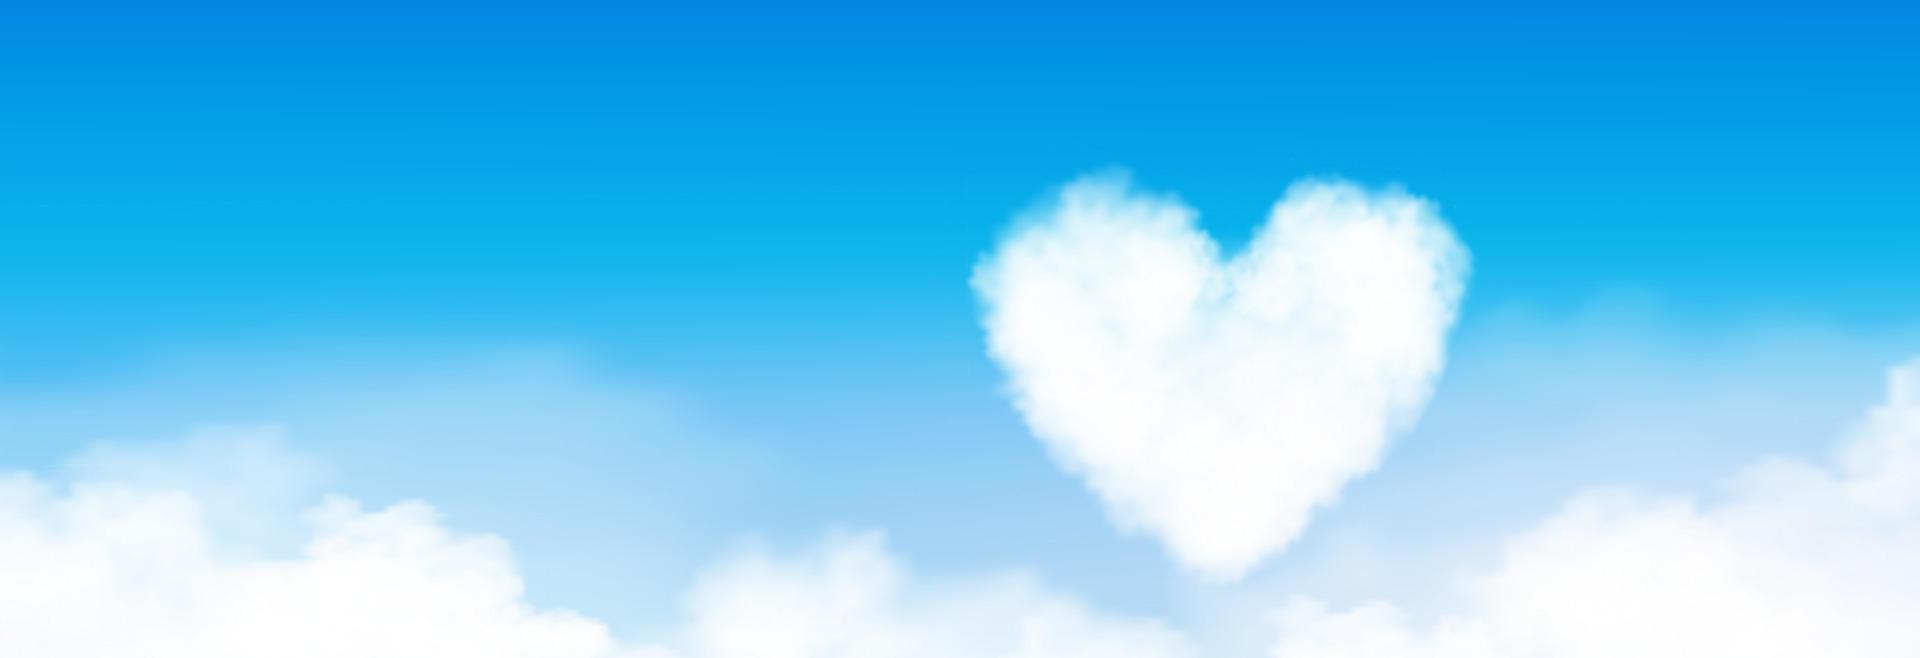 cielo azul con forma de corazón, fondo de nubes altostratus, cielo de dibujos animados vectoriales con nubes de cirros, concepto de día de san valentín y amor por la temporada de vacaciones, telón de fondo amplio horizonte pancarta mañana en primavera, verano vector